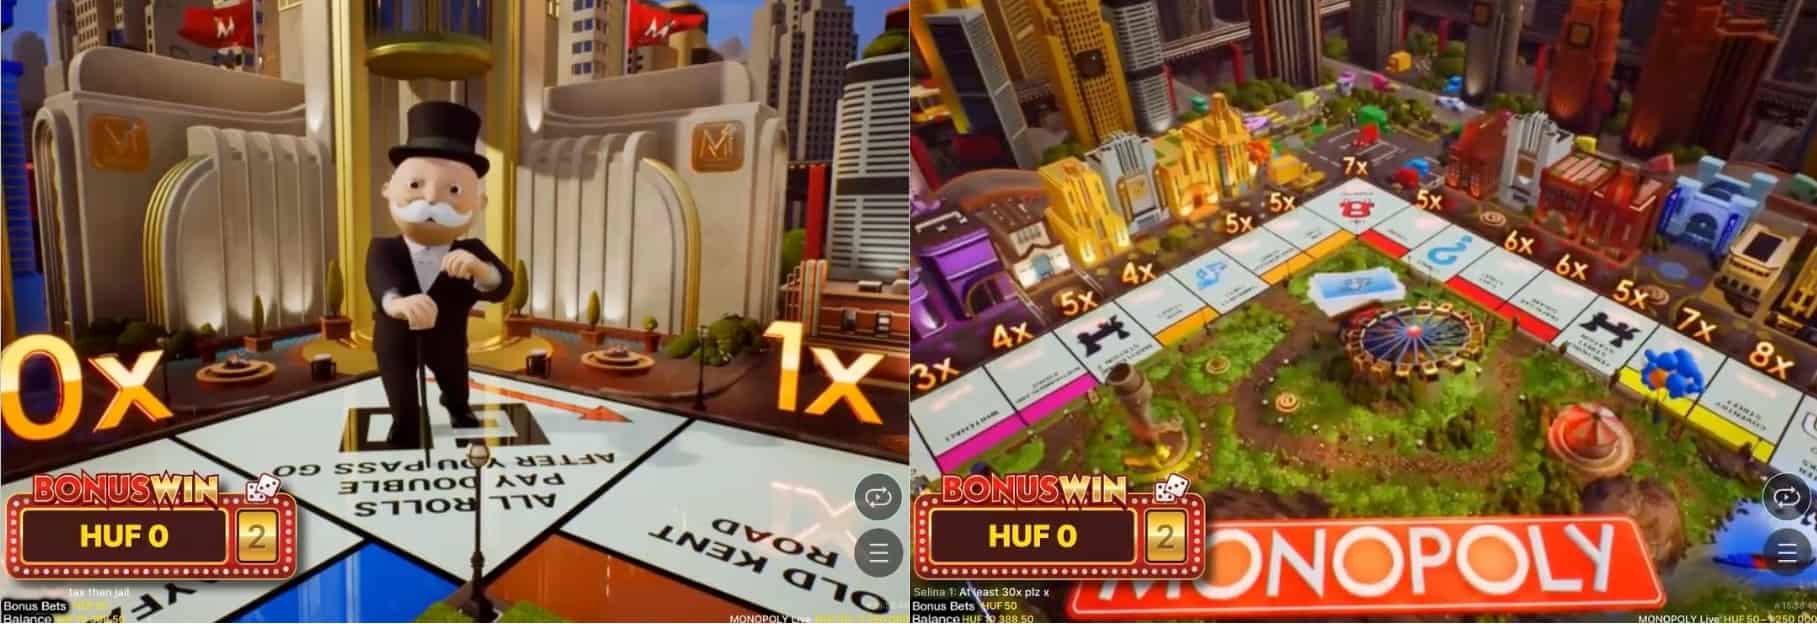 Monopoly bonus game feature